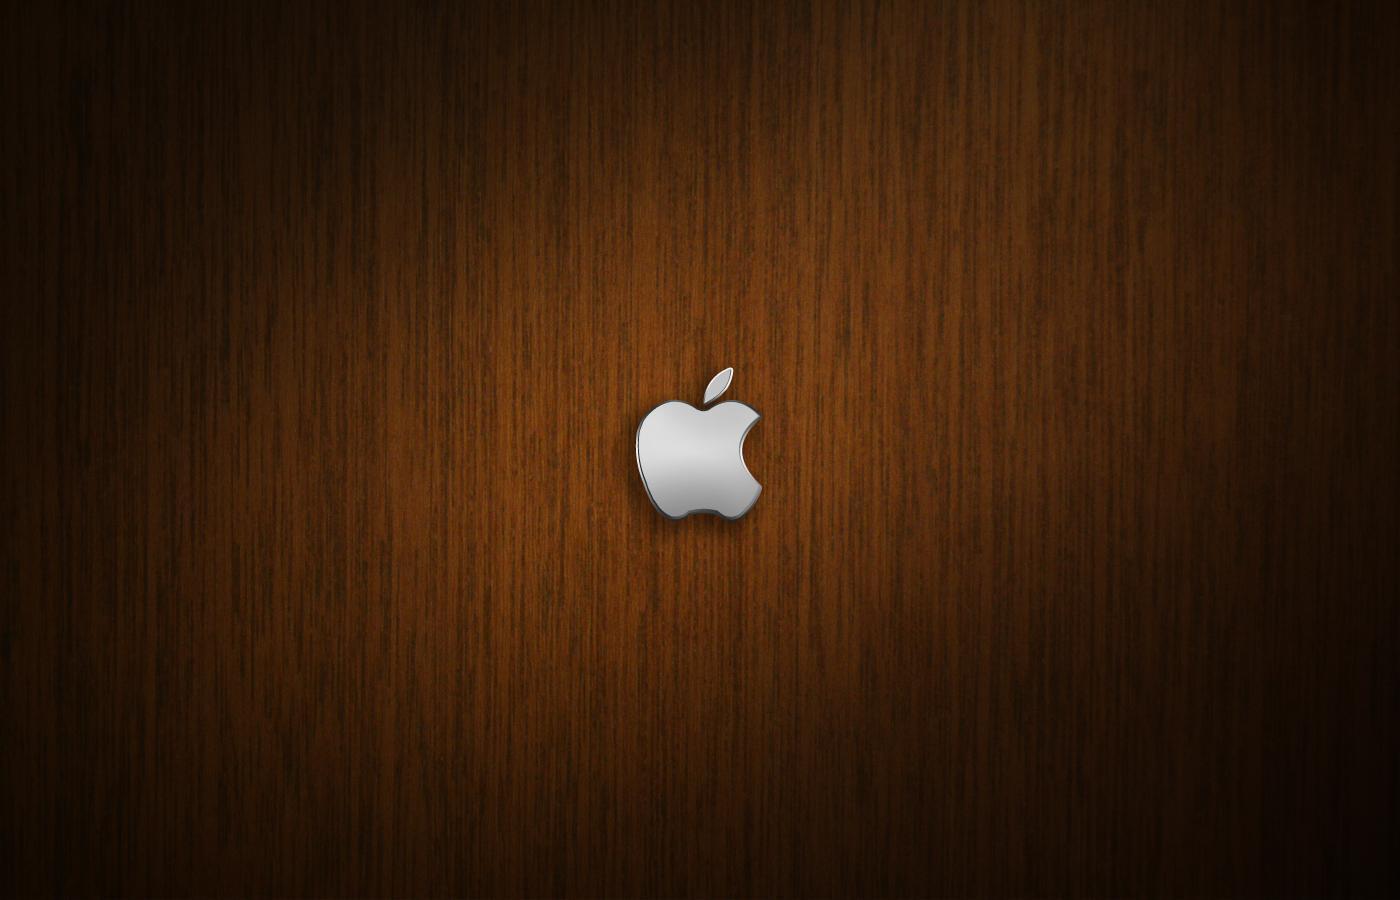 Wooden Apple Wallpaper. fbpapa